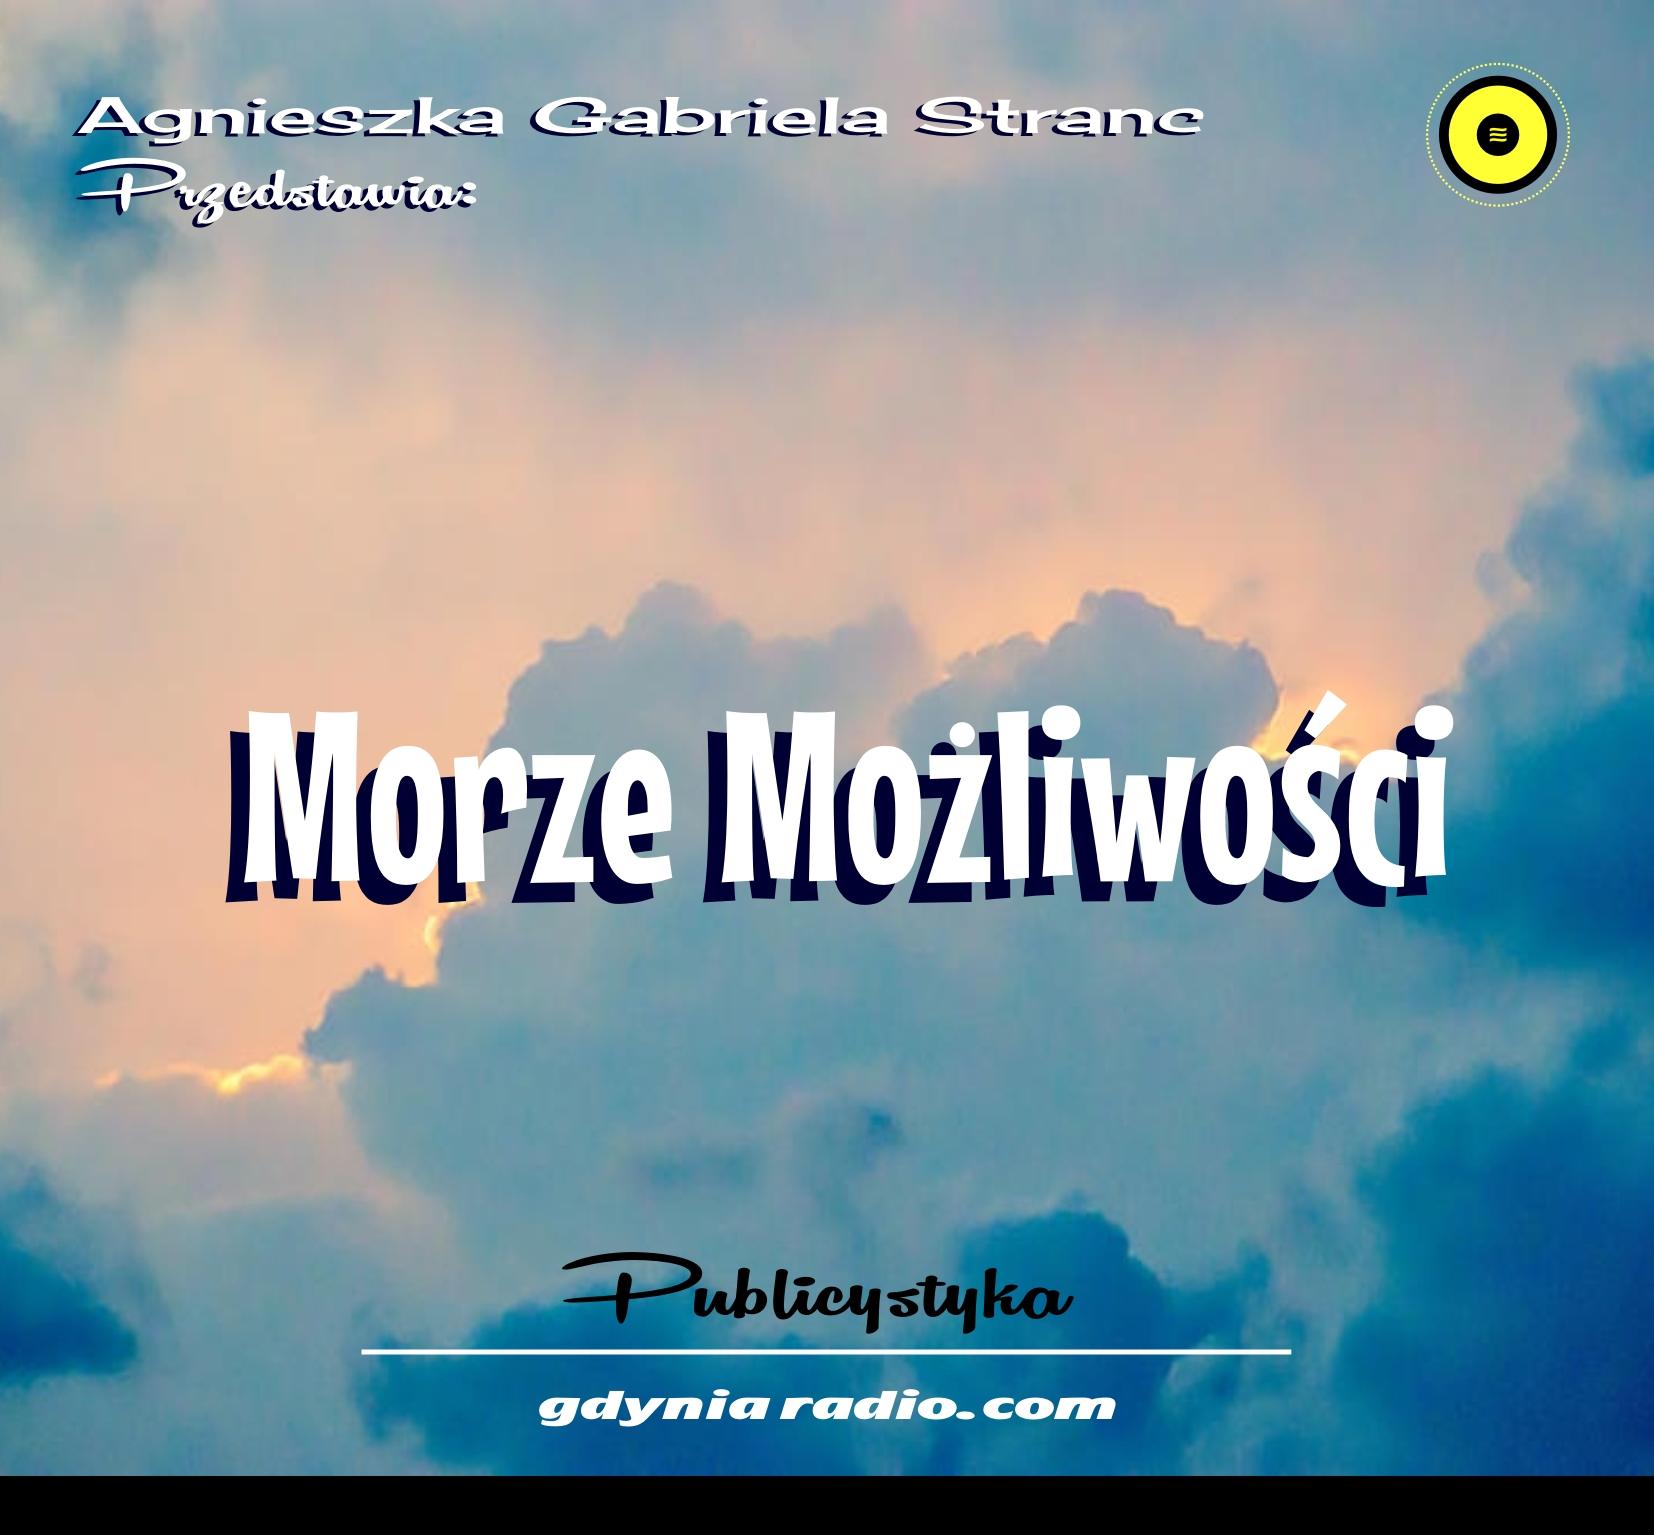 Gdynia Radio 2021 Moze mozliwosci 5 Agnieszka Stranc Home